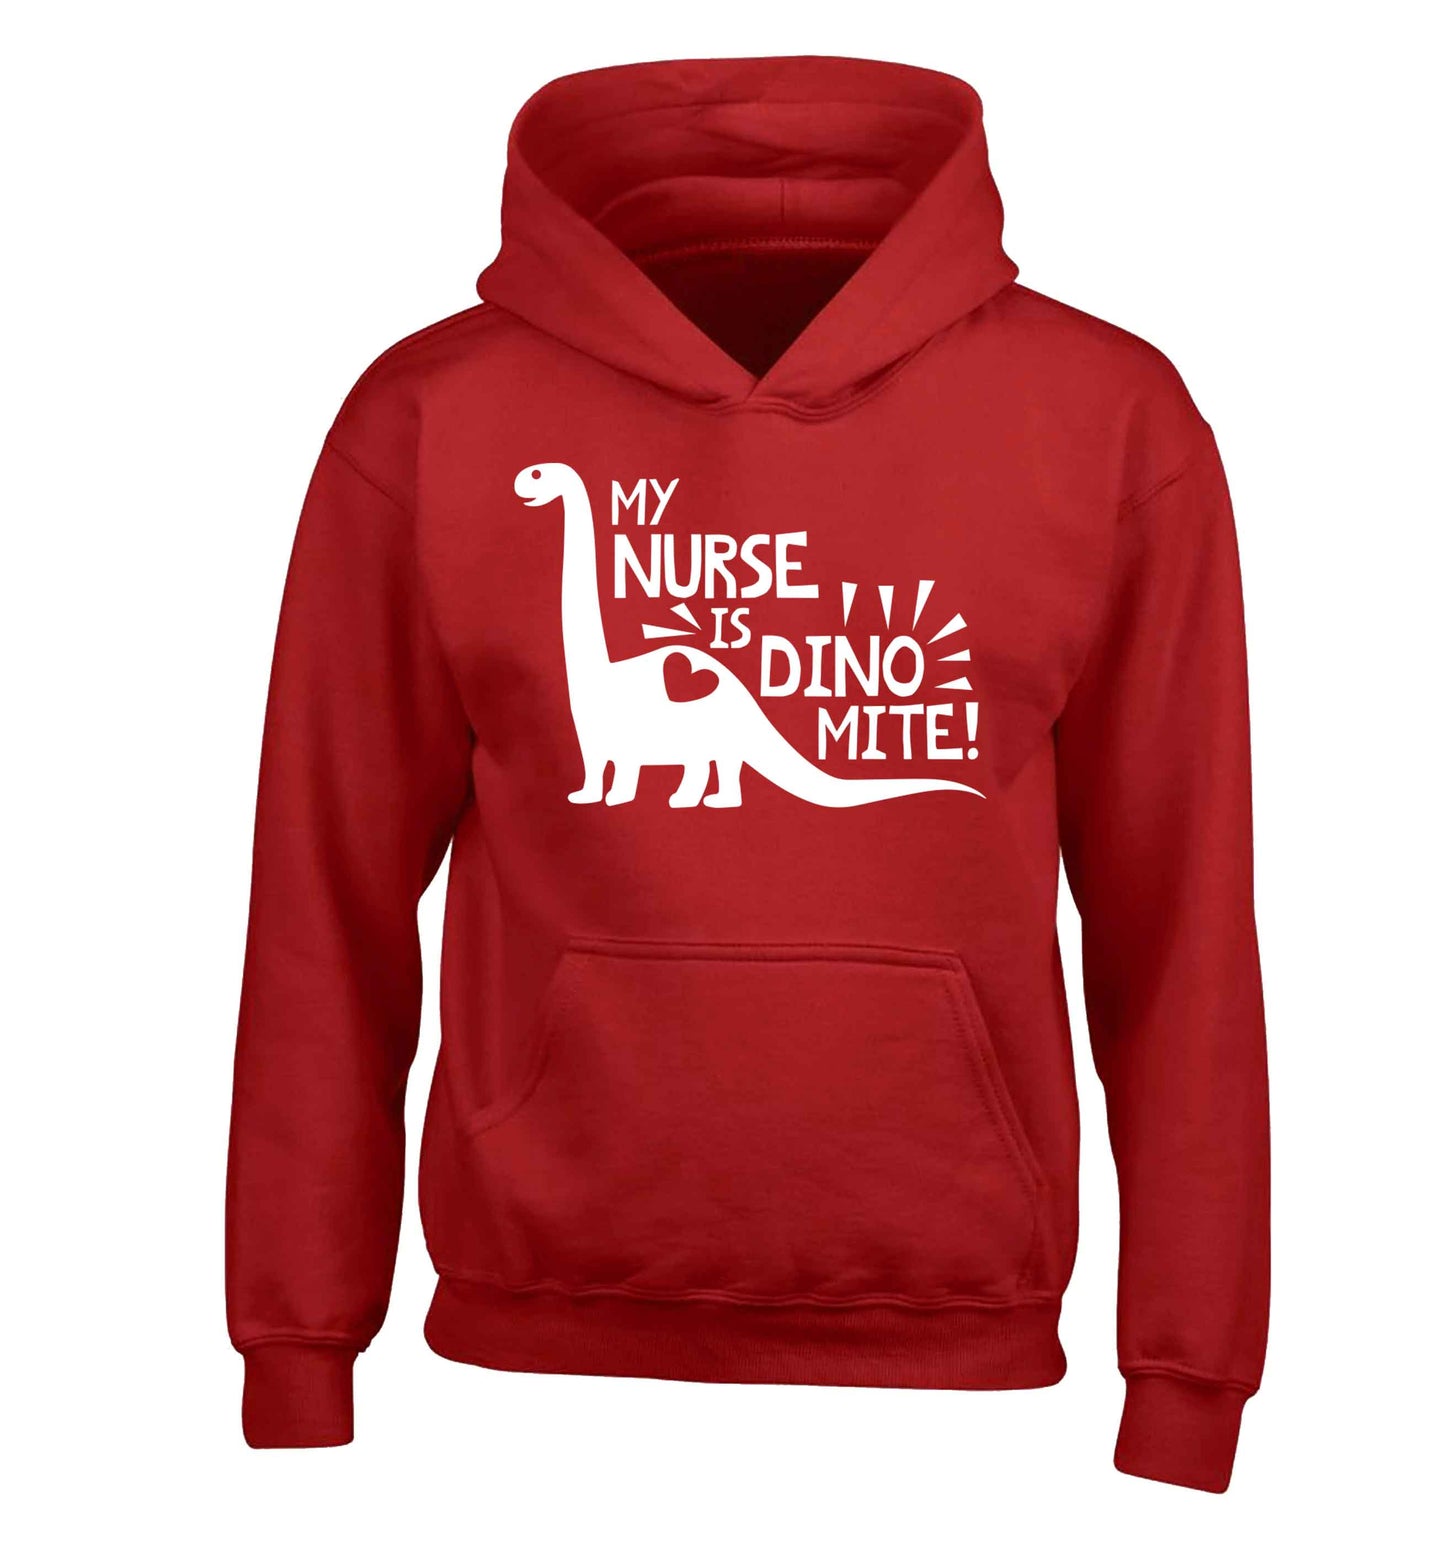 My nurse is dinomite! children's red hoodie 12-13 Years